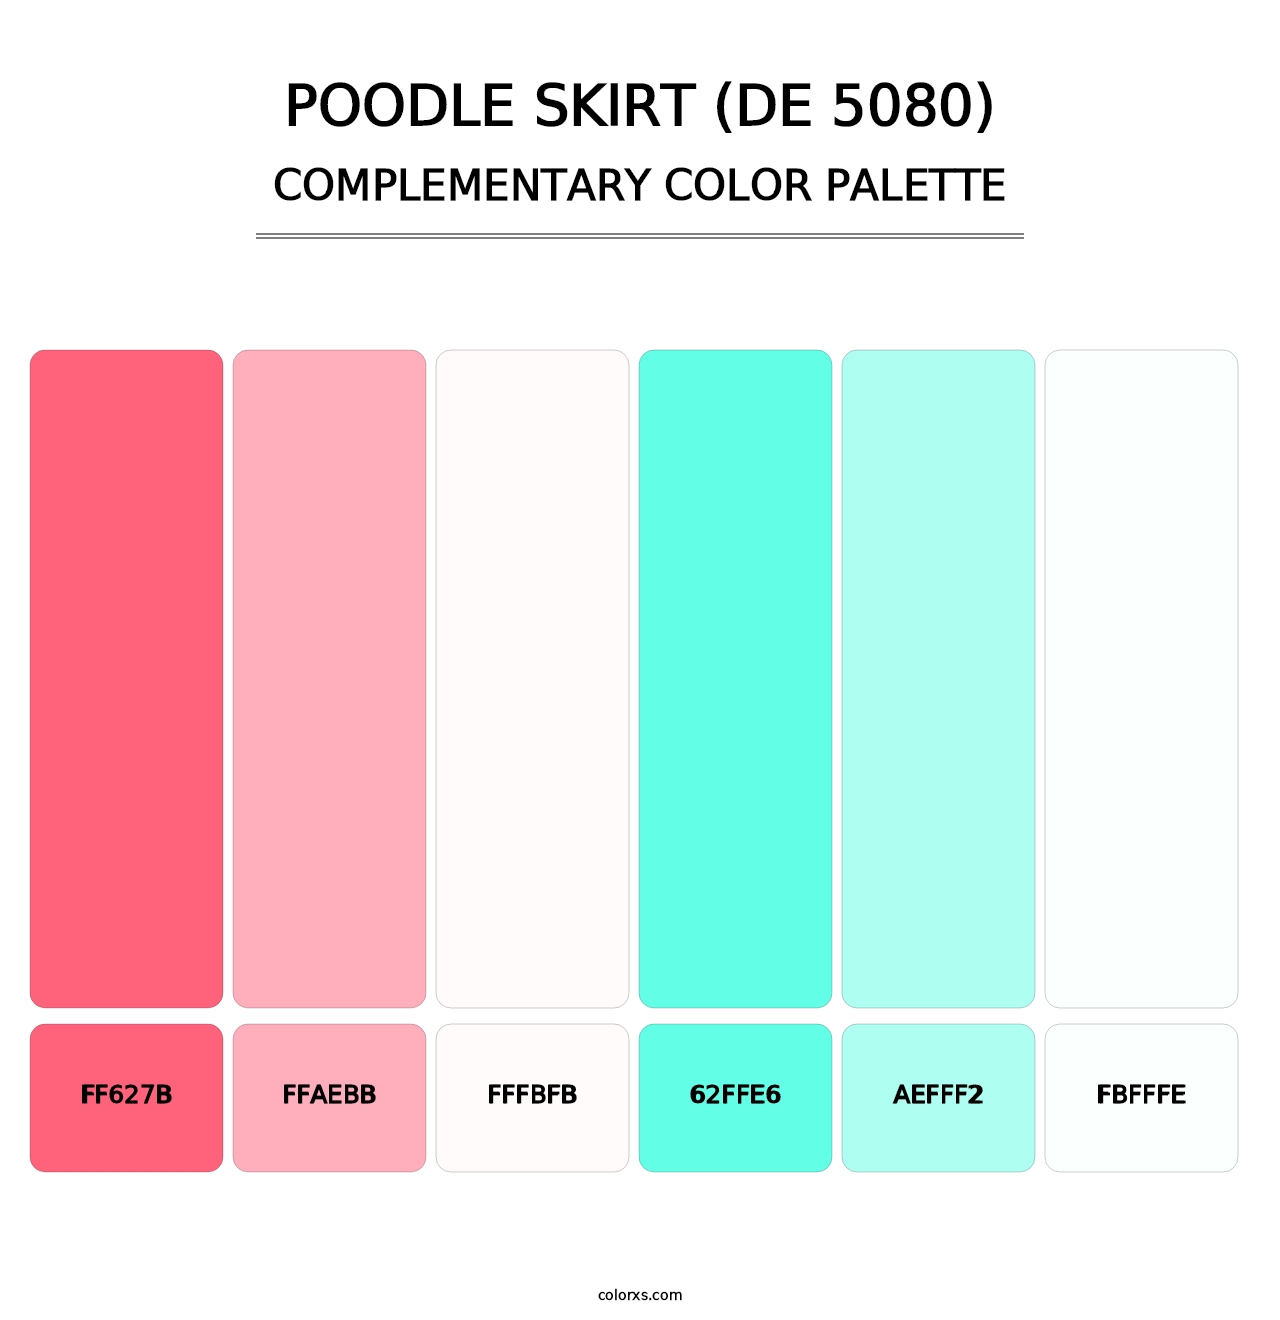 Poodle Skirt (DE 5080) - Complementary Color Palette